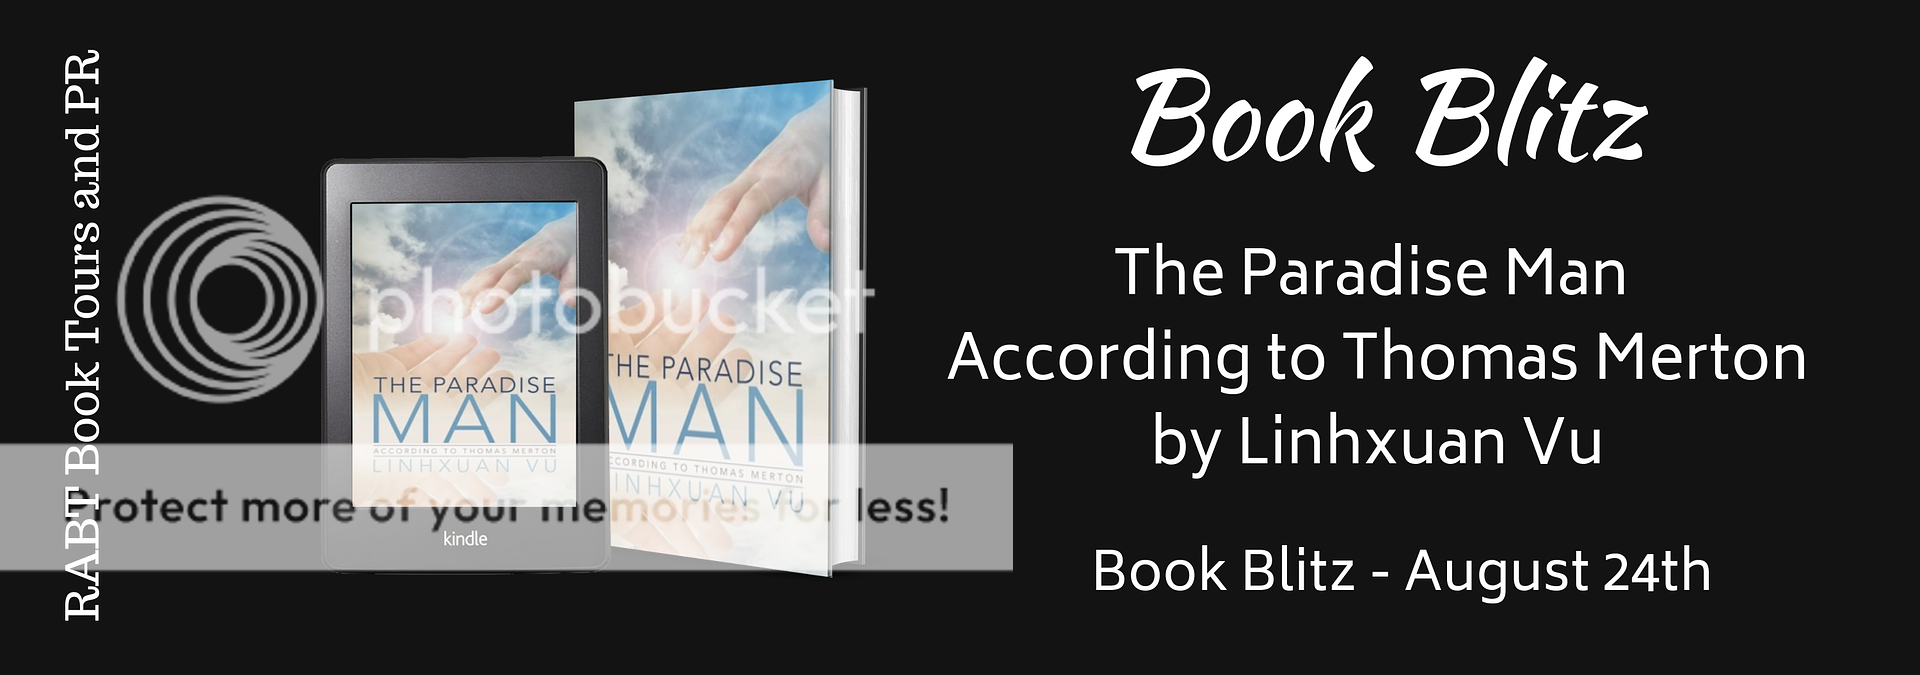 Book Blitz: The Paradise Man According to Thomas Merton #religion #nonfiction #selfhelp @RABTBookTours